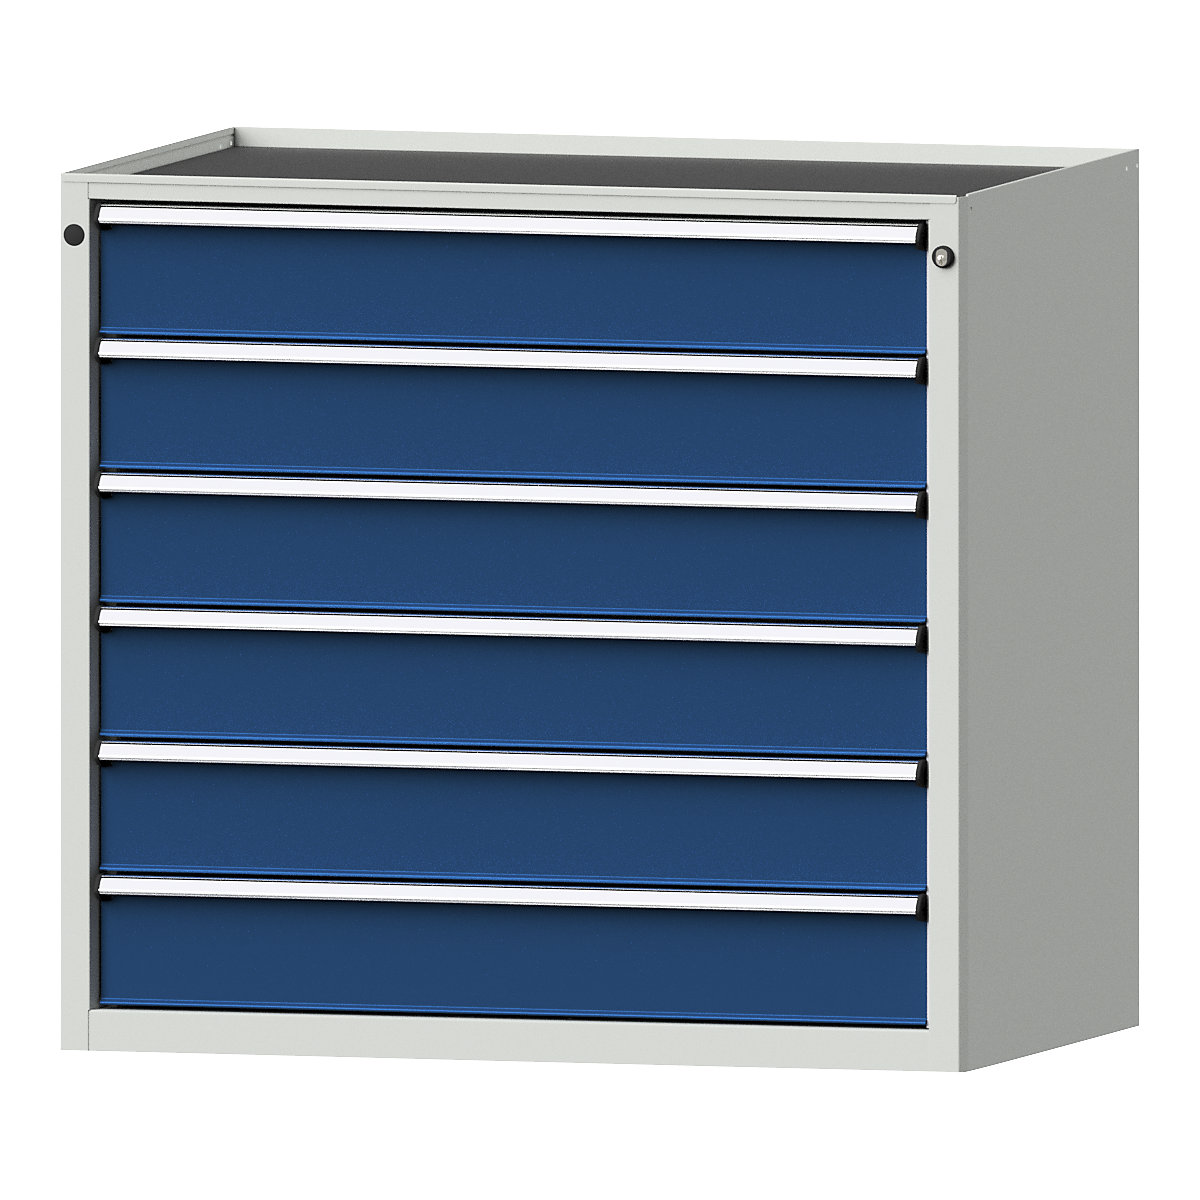 Armoire à tiroirs – ANKE, l x p 1060 x 675 mm, charge max. tiroirs 200 kg, 6 tiroirs, hauteur 980 mm, façade bleu gentiane-8